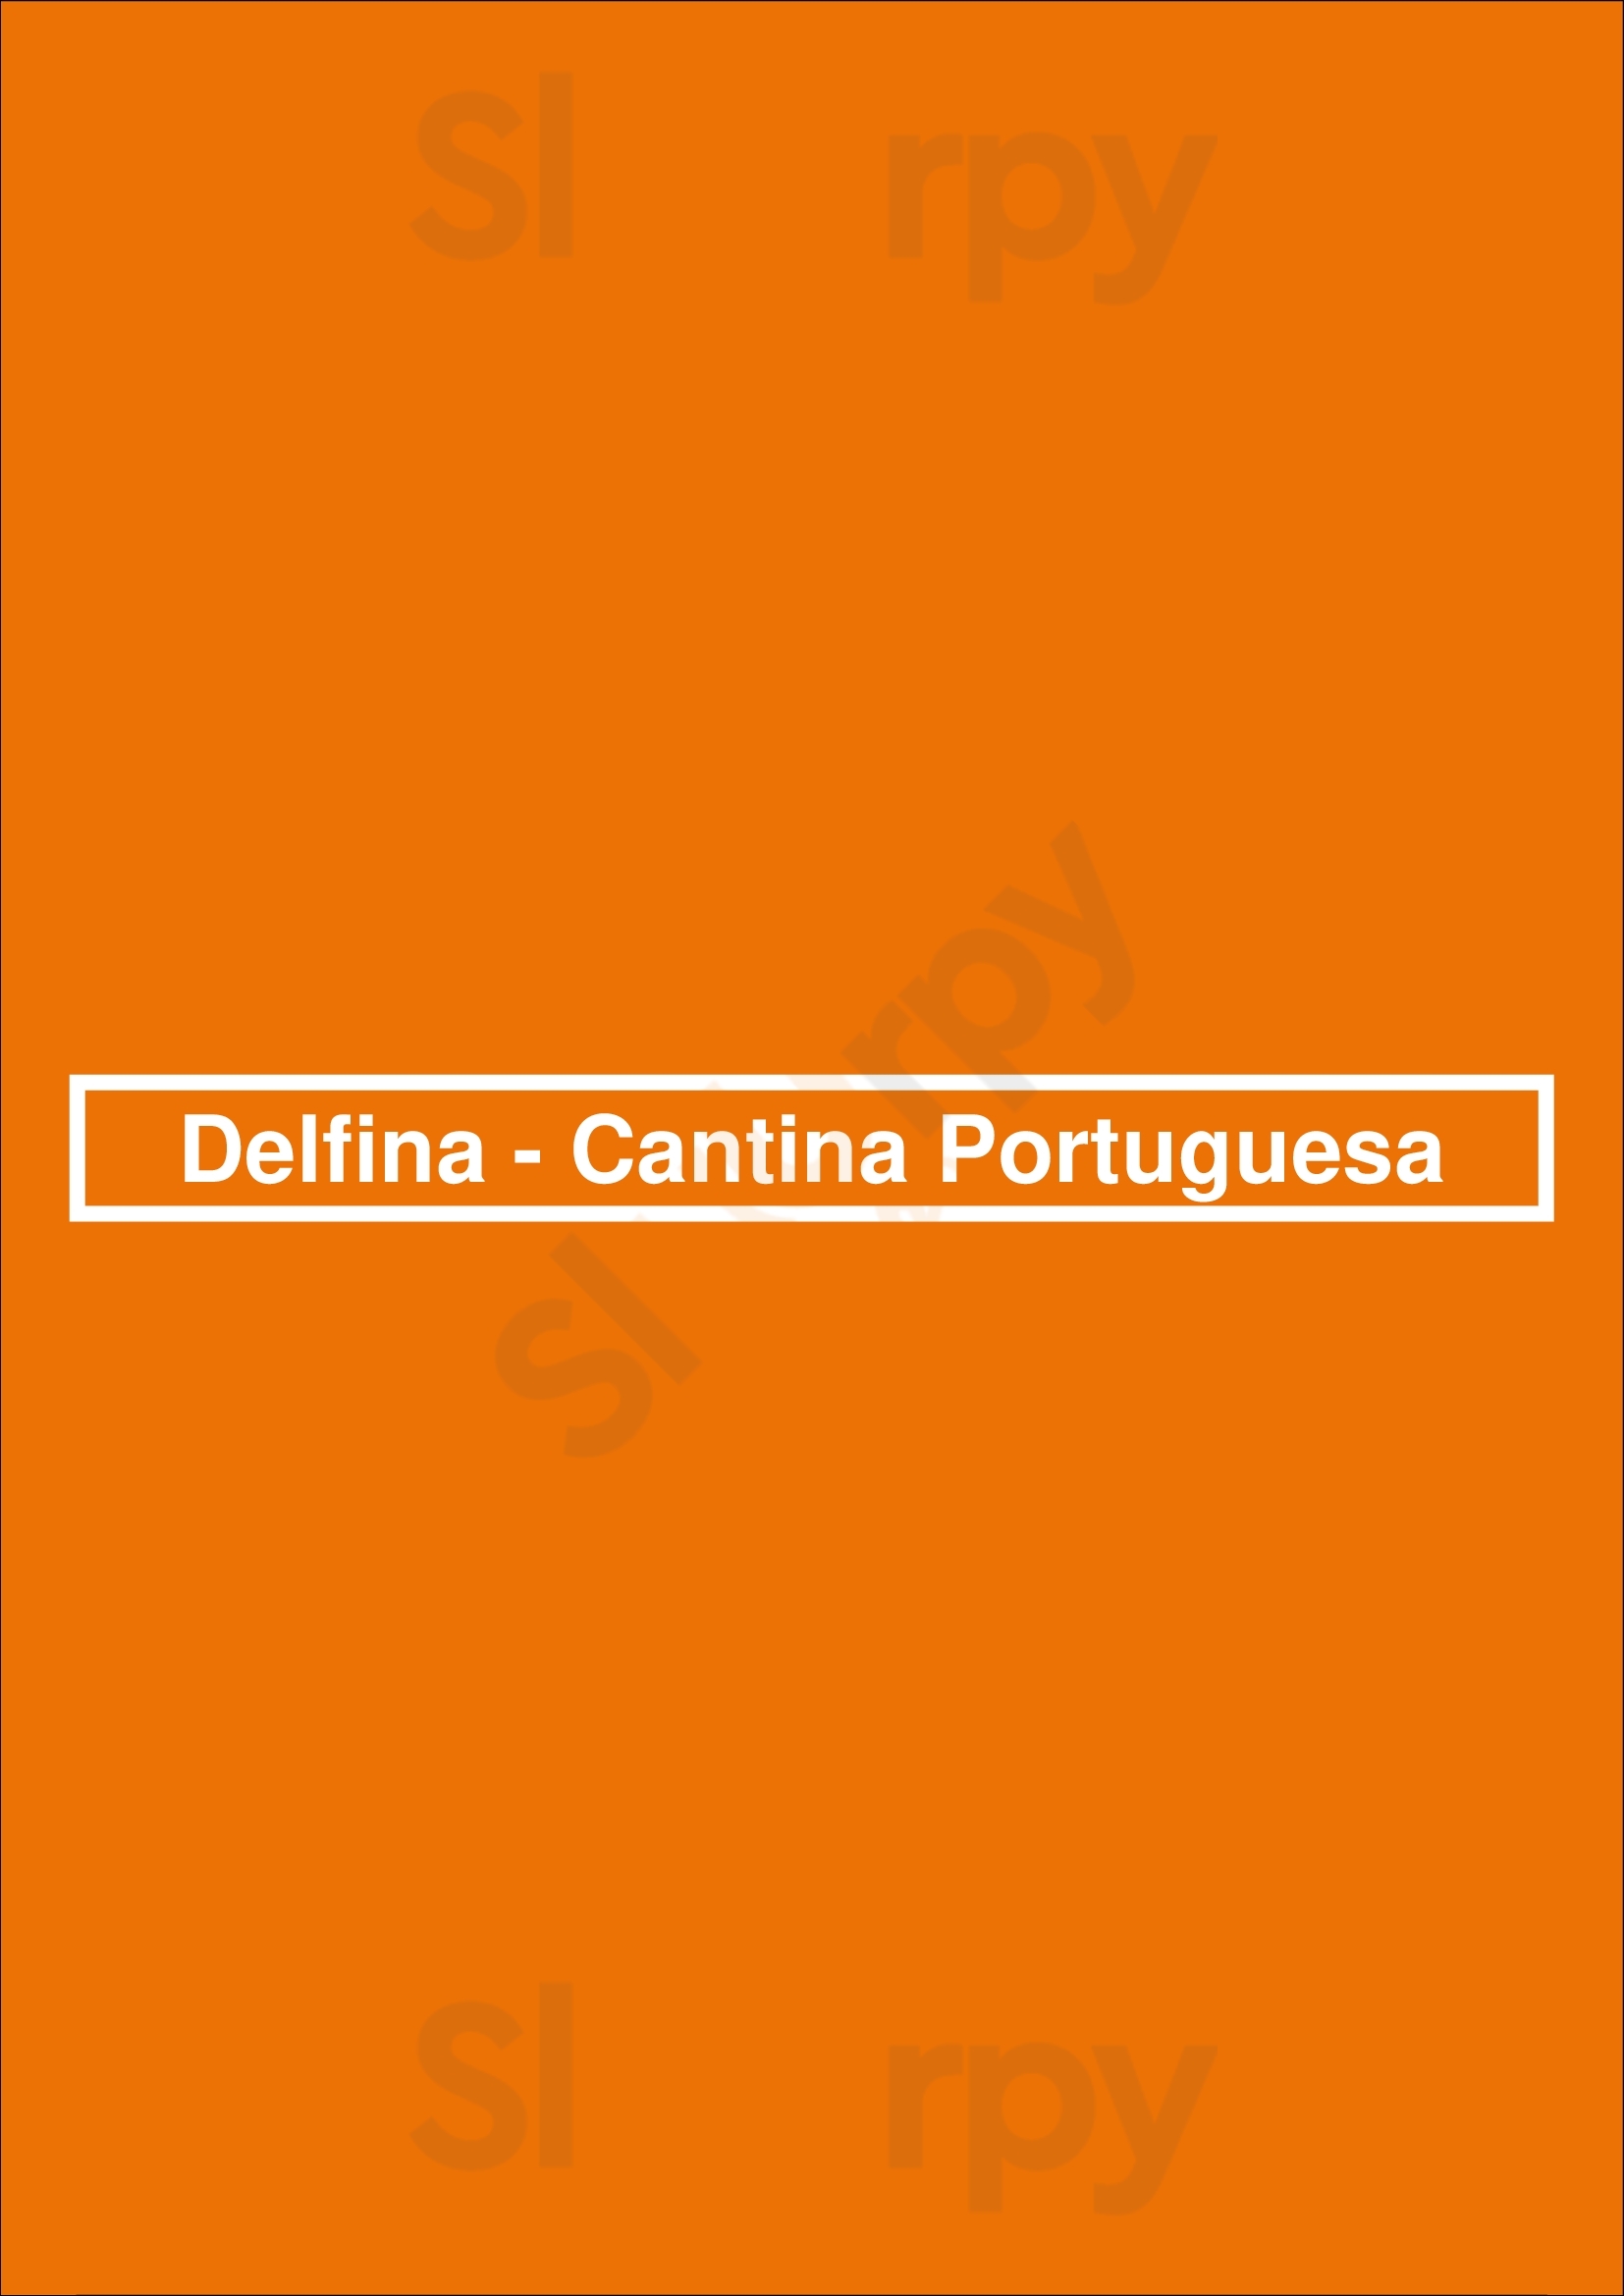 Delfina - Cantina Portuguesa Lisboa Menu - 1